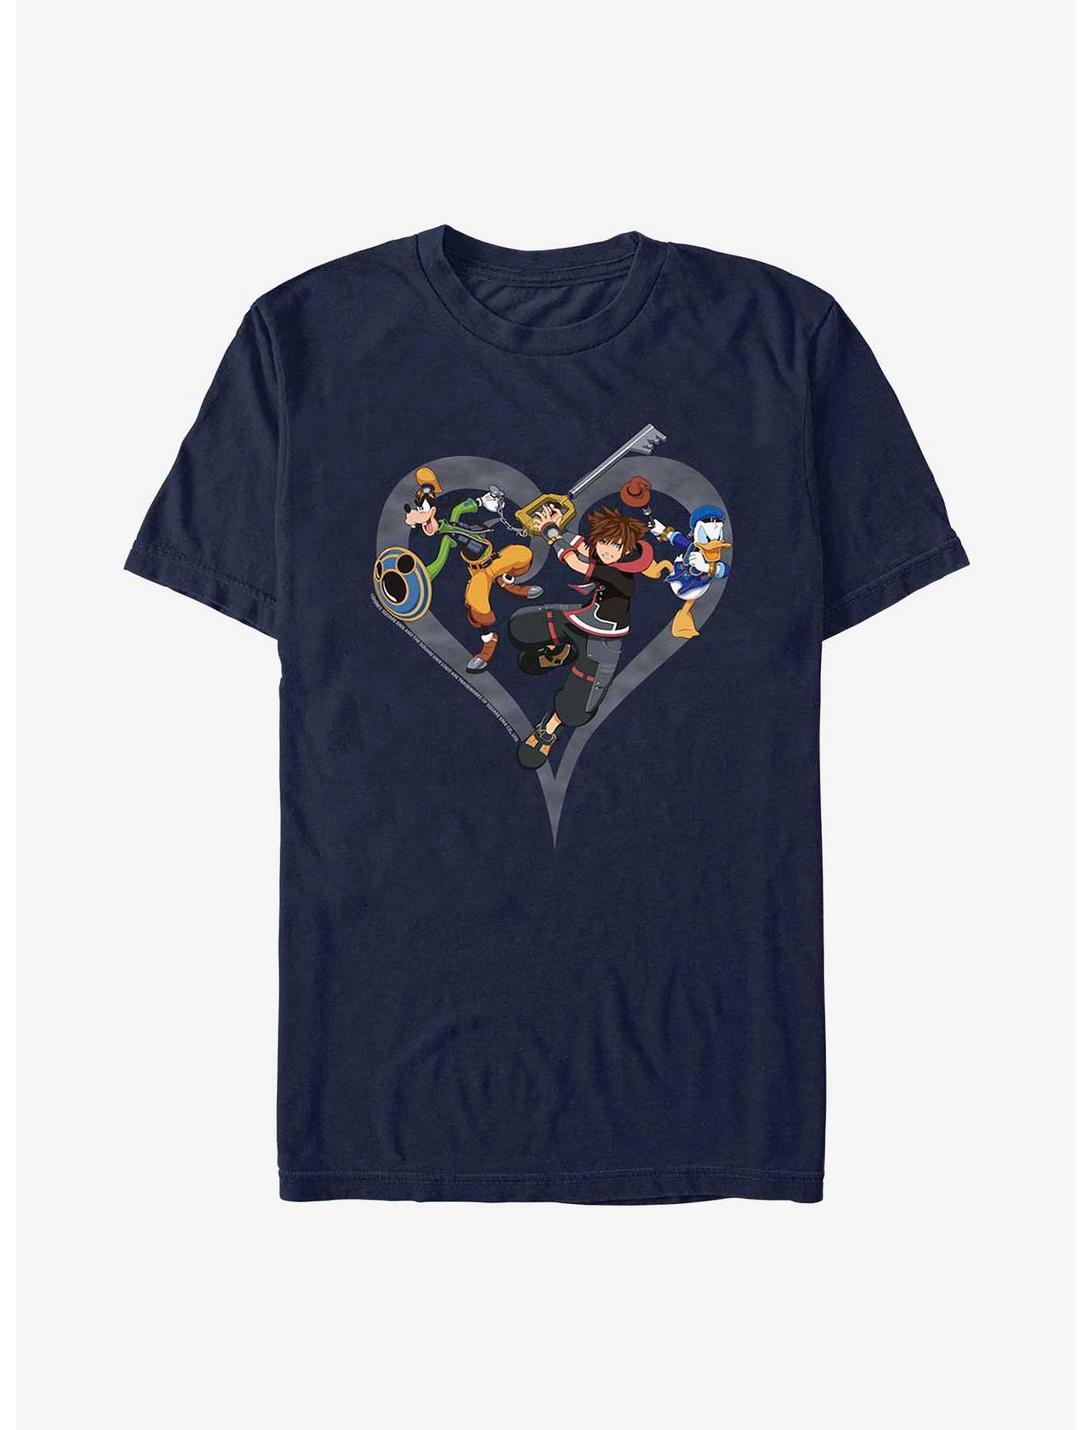 Disney Kingdom Hearts Sora Goofy Donald Attack T-Shirt, NAVY, hi-res